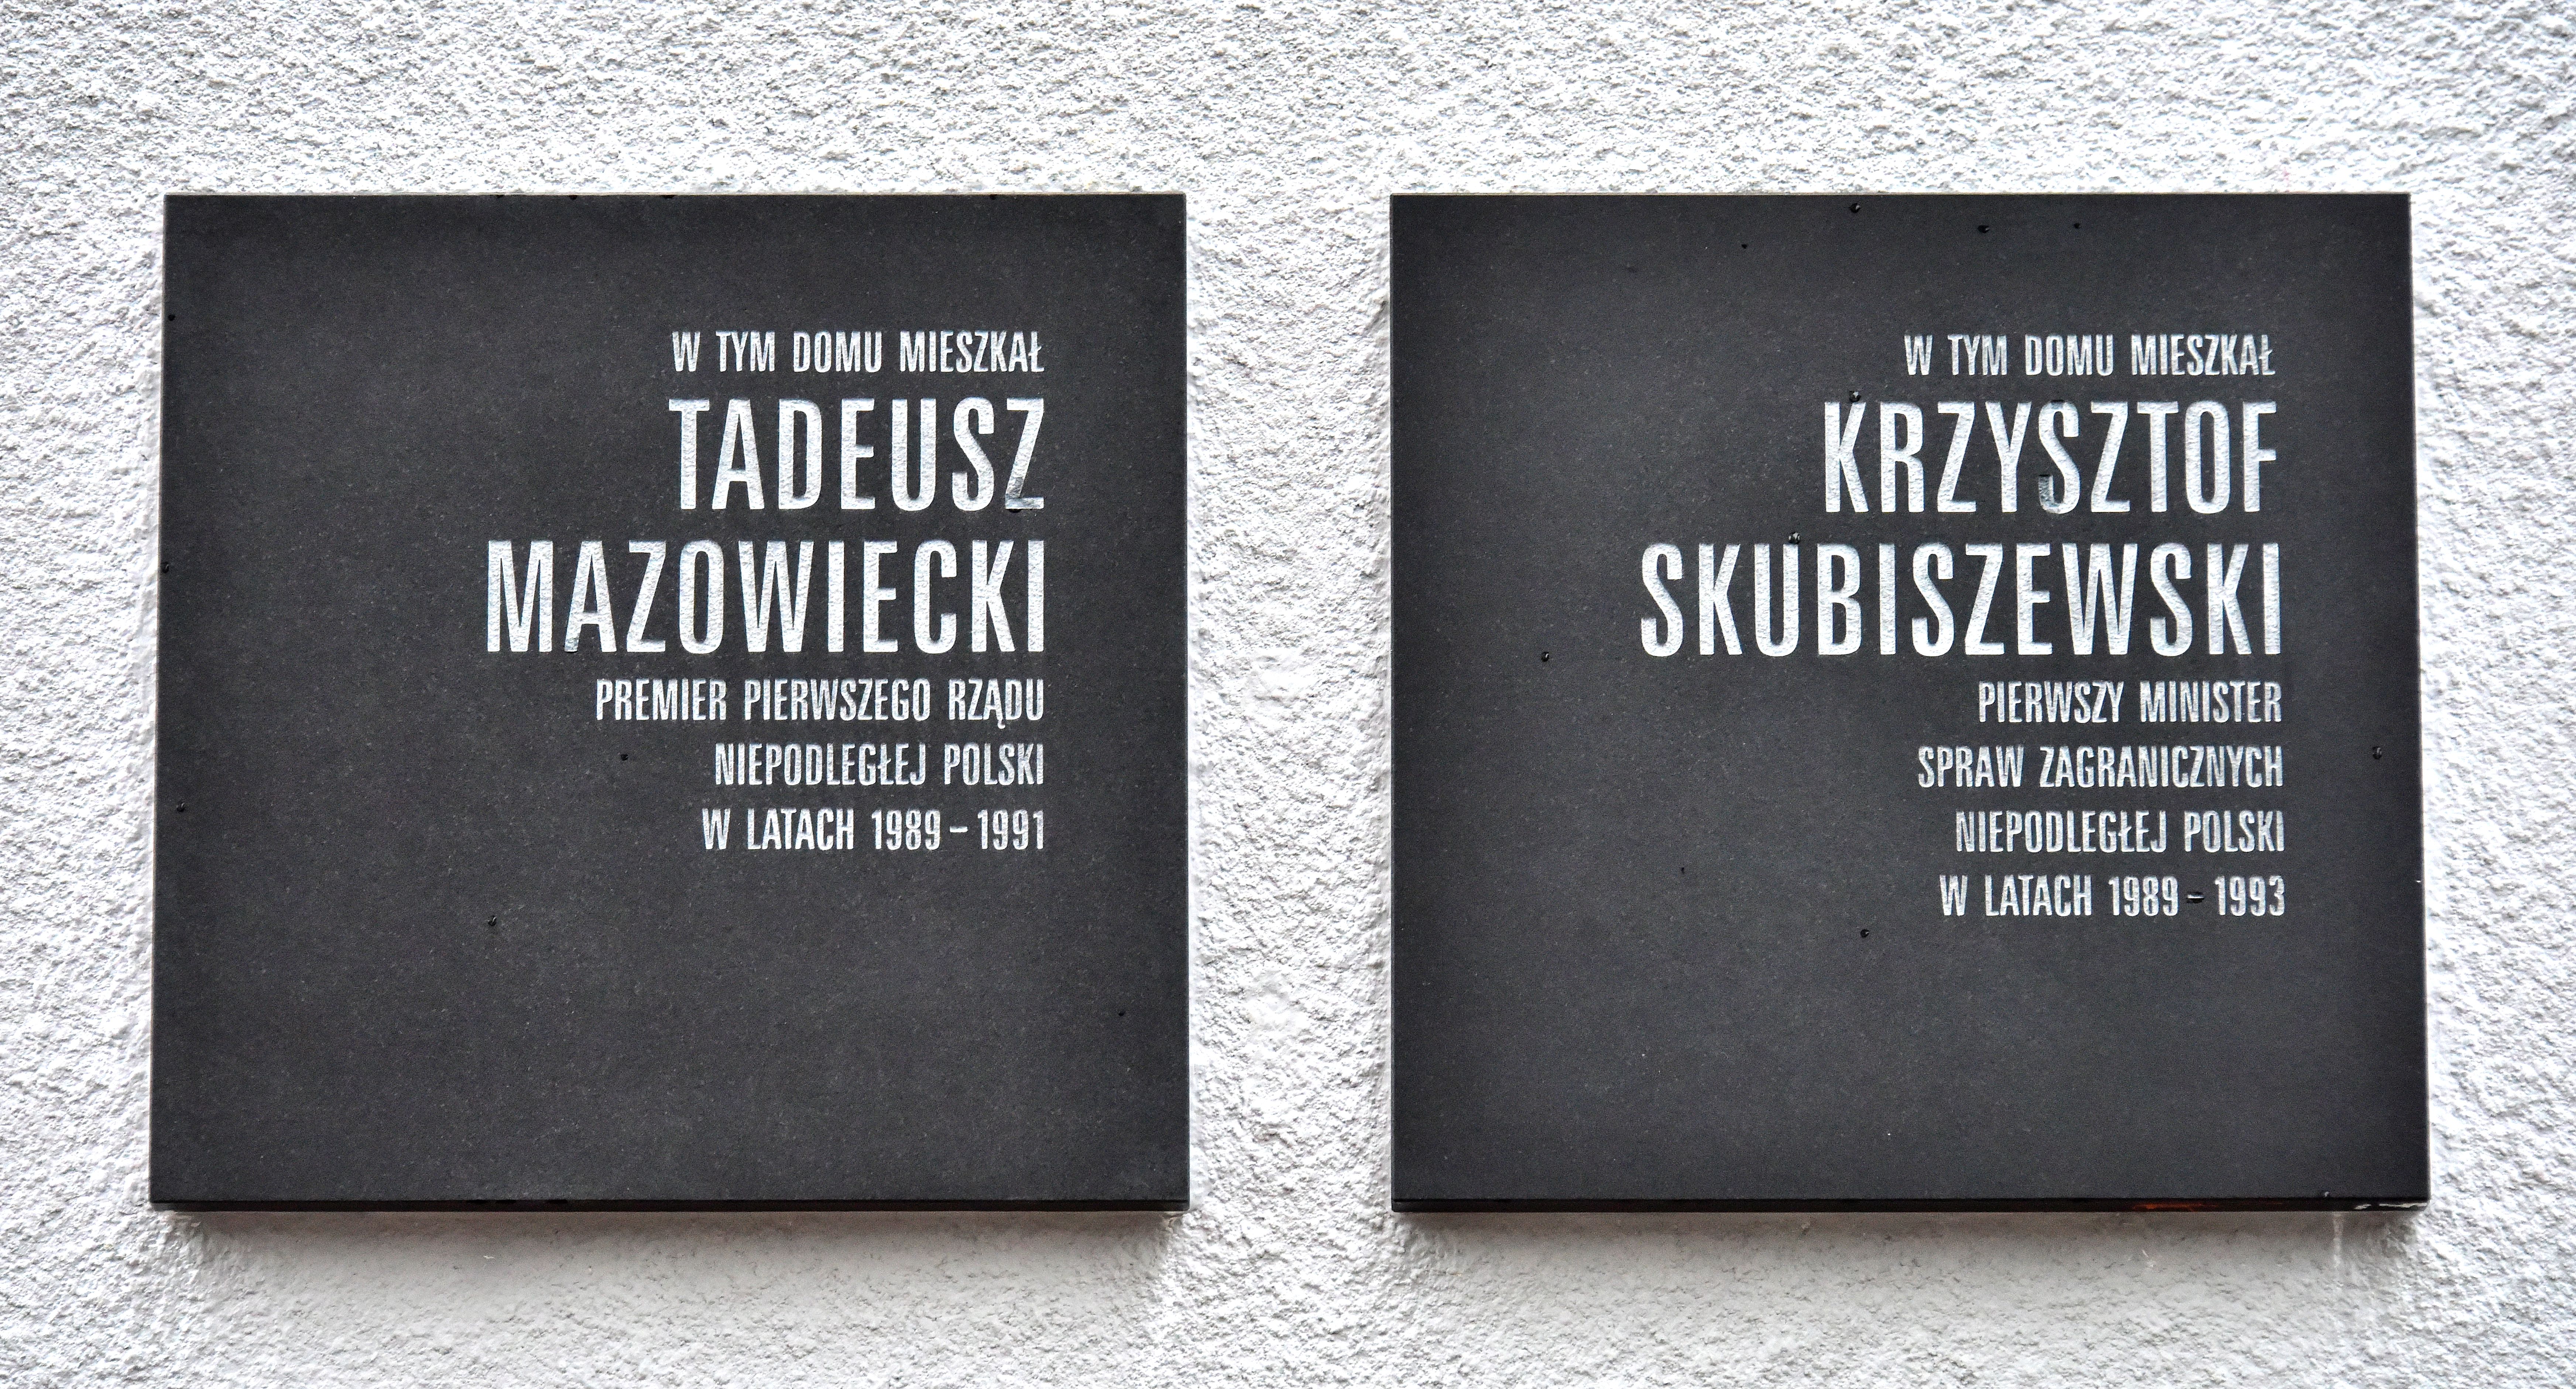 Wikipedia, December 2017 in Warsaw, Here-lived plaques in Warsaw, Krzysztof Skubiszewski, Lewicka St